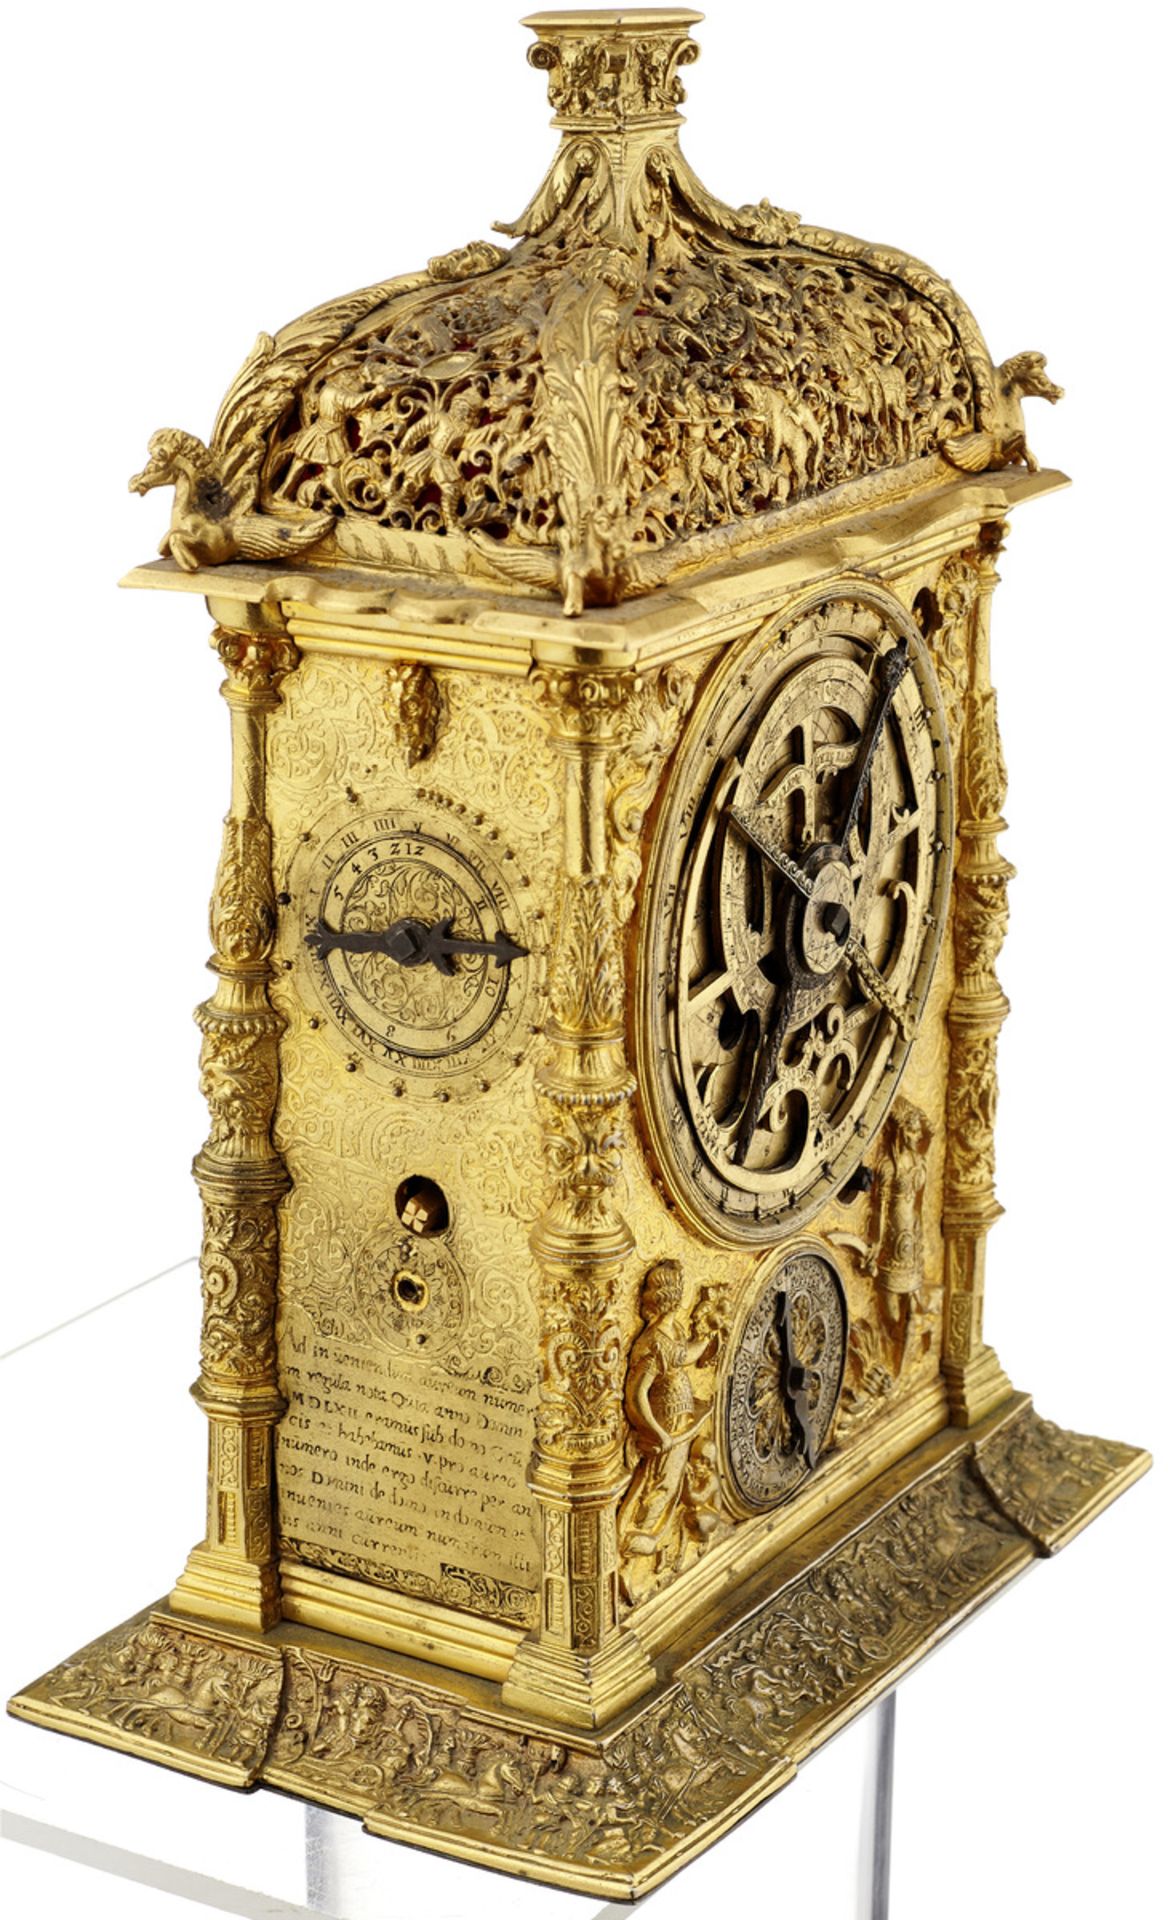 TischuhrUm 1880. Renaissancestil. Gehäuse aus vergoldetem Metall mit reicher Reliefornamentik. - Bild 3 aus 5